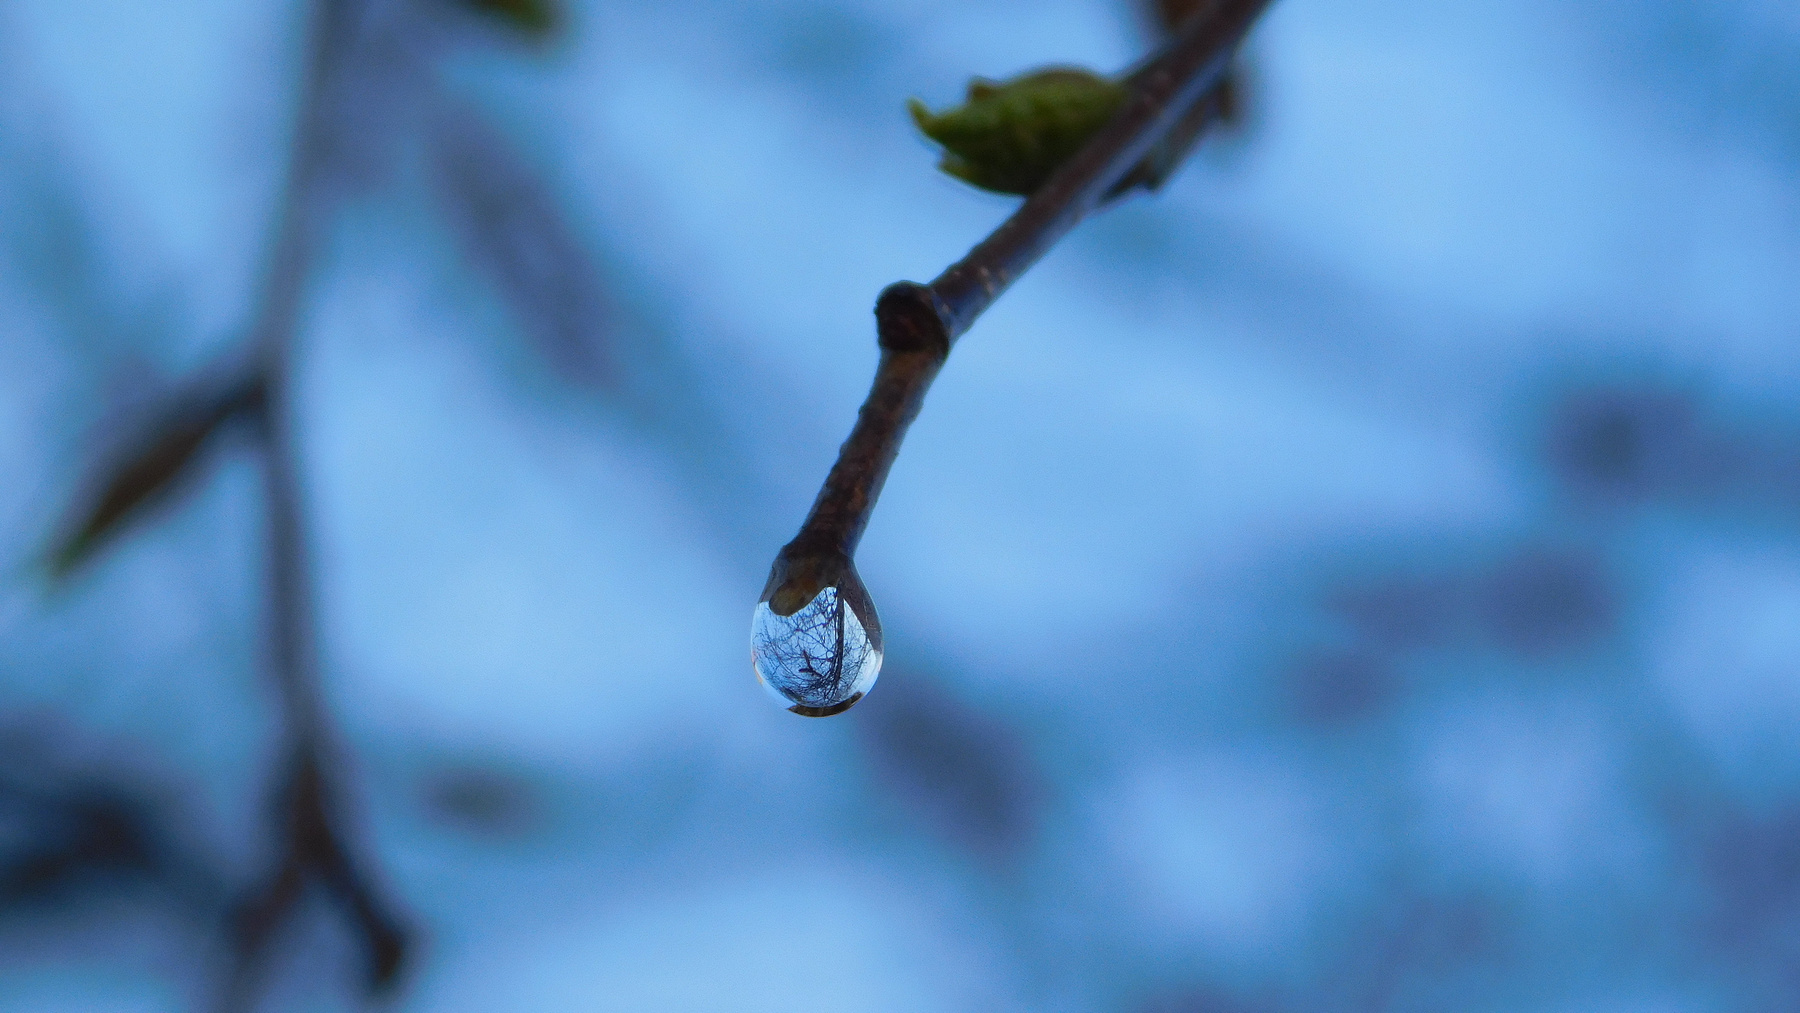 Березовый сок весна макро береза вода капля отражение